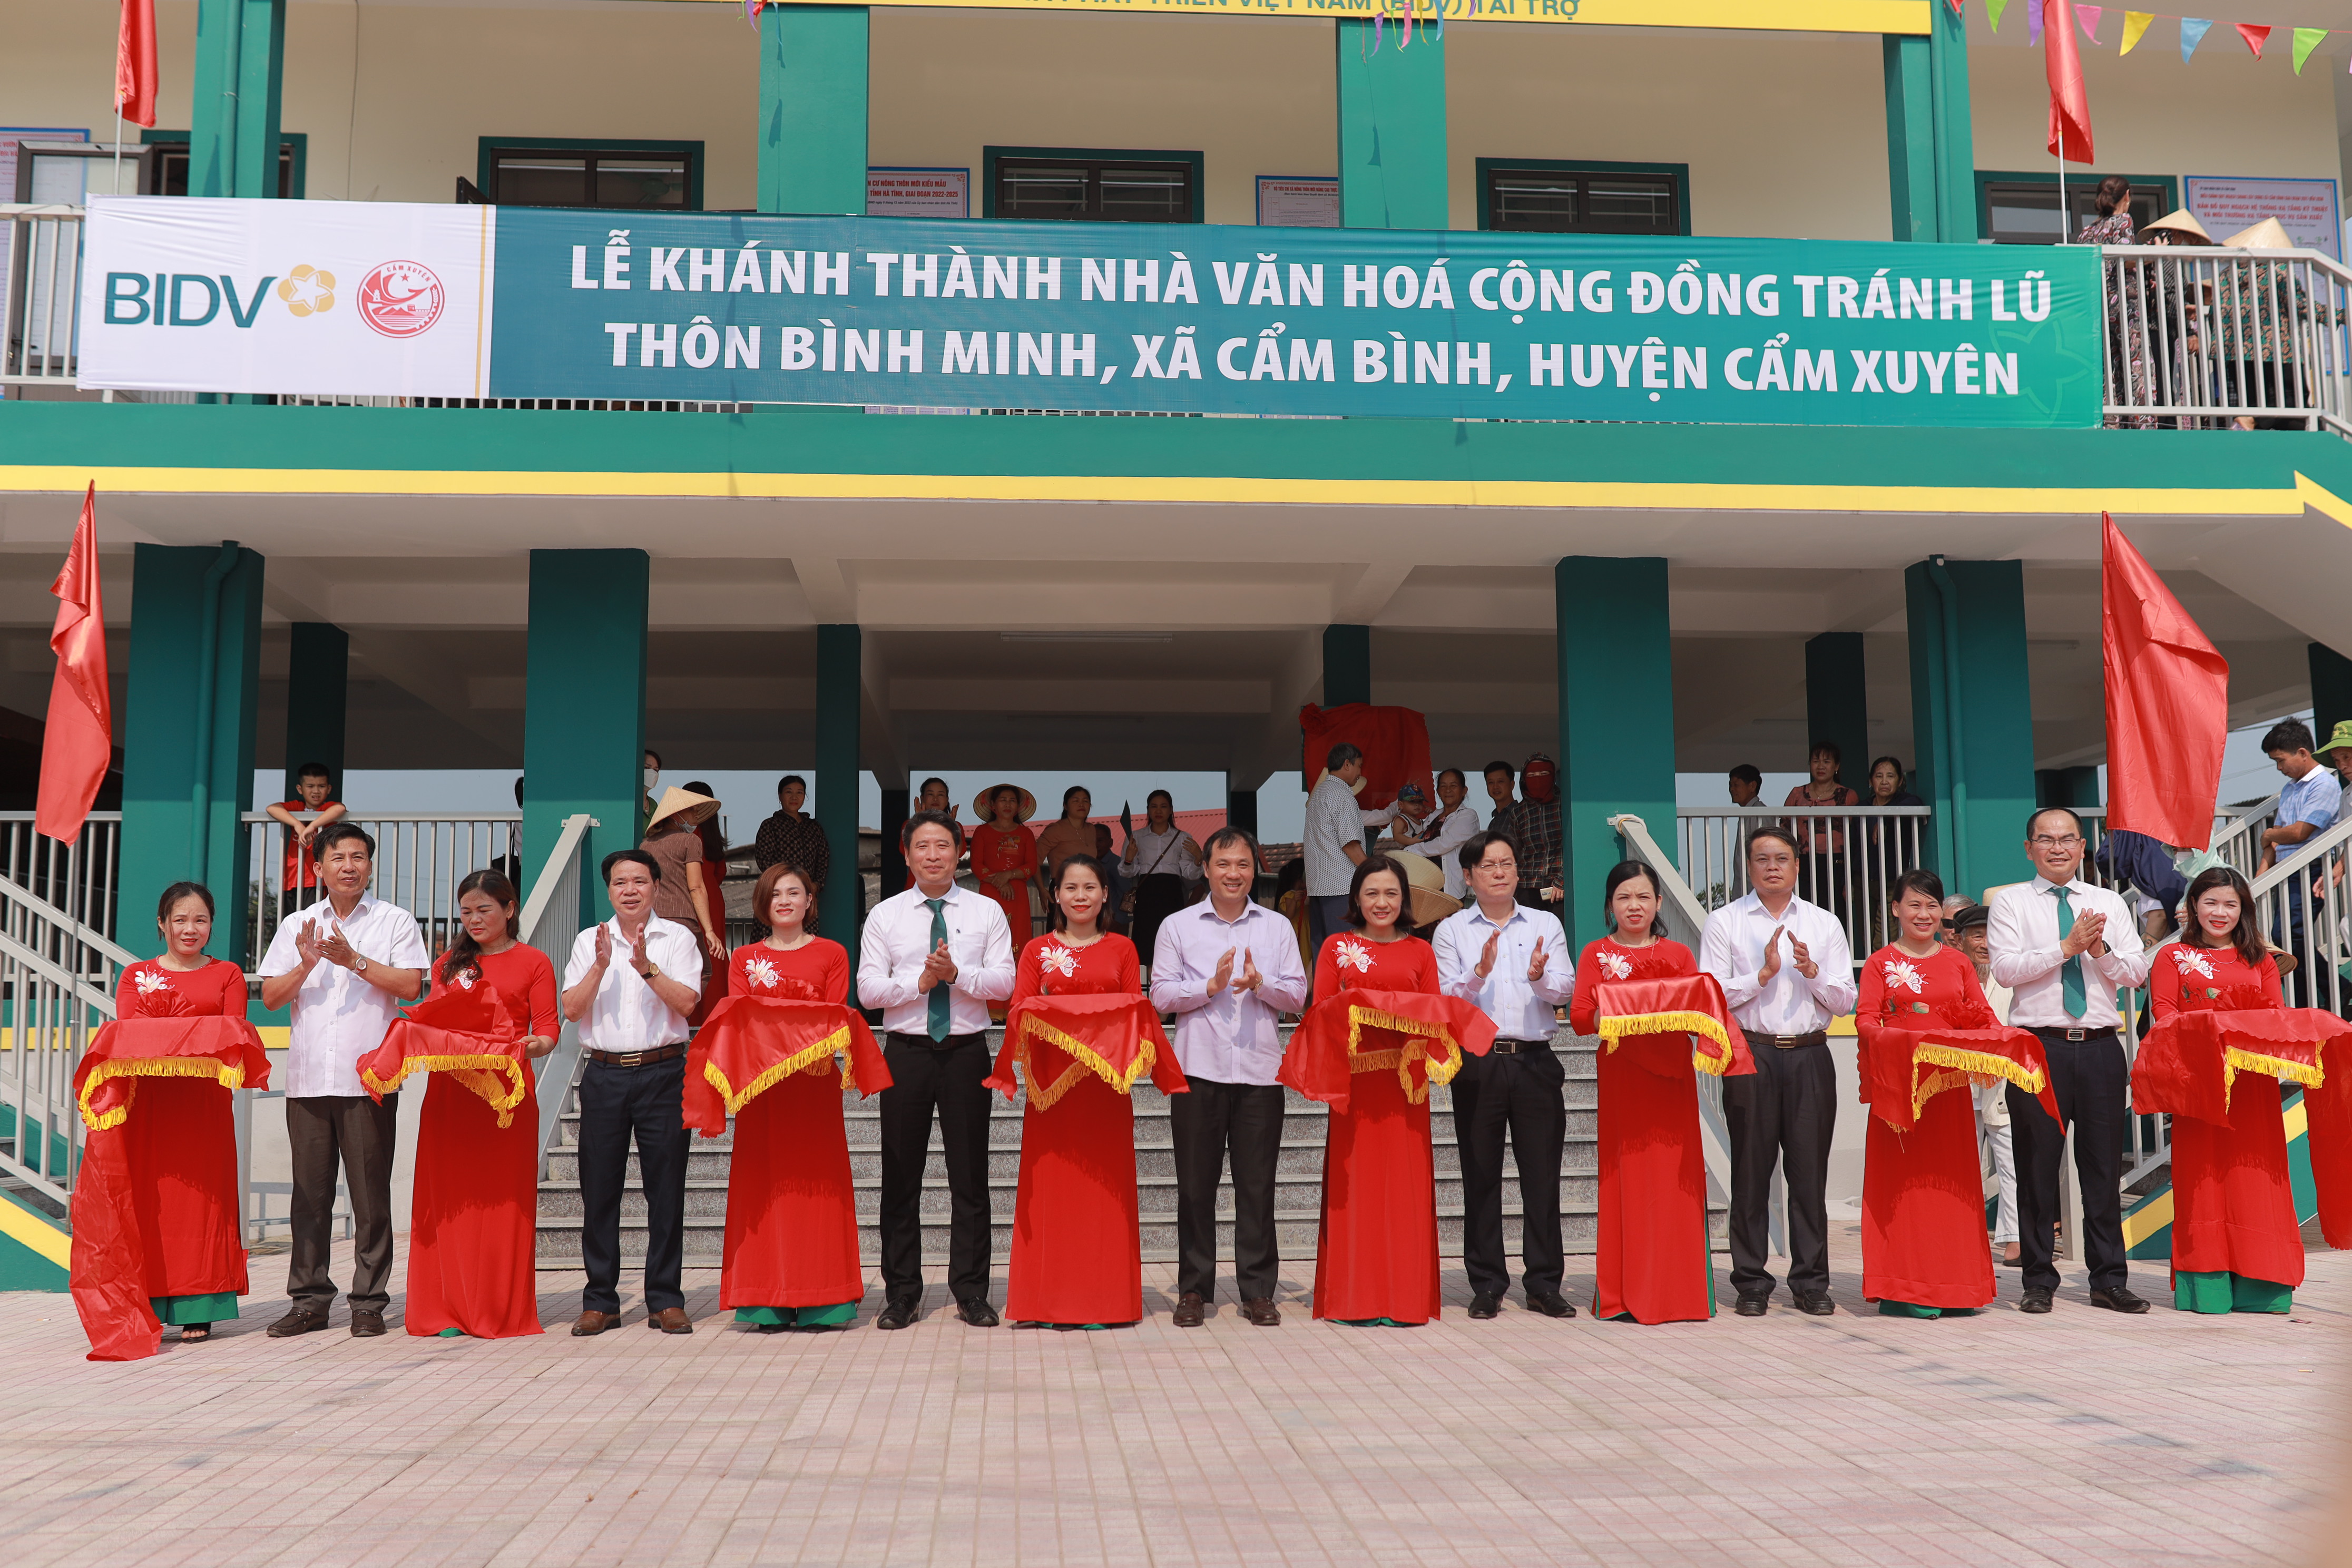 Lễ Cắt băng khánh thành nhà cộng đồng tránh lũ tại xã Cẩm Bình, huyện Cẩm Xuyên, tỉnh Hà Tĩnh.